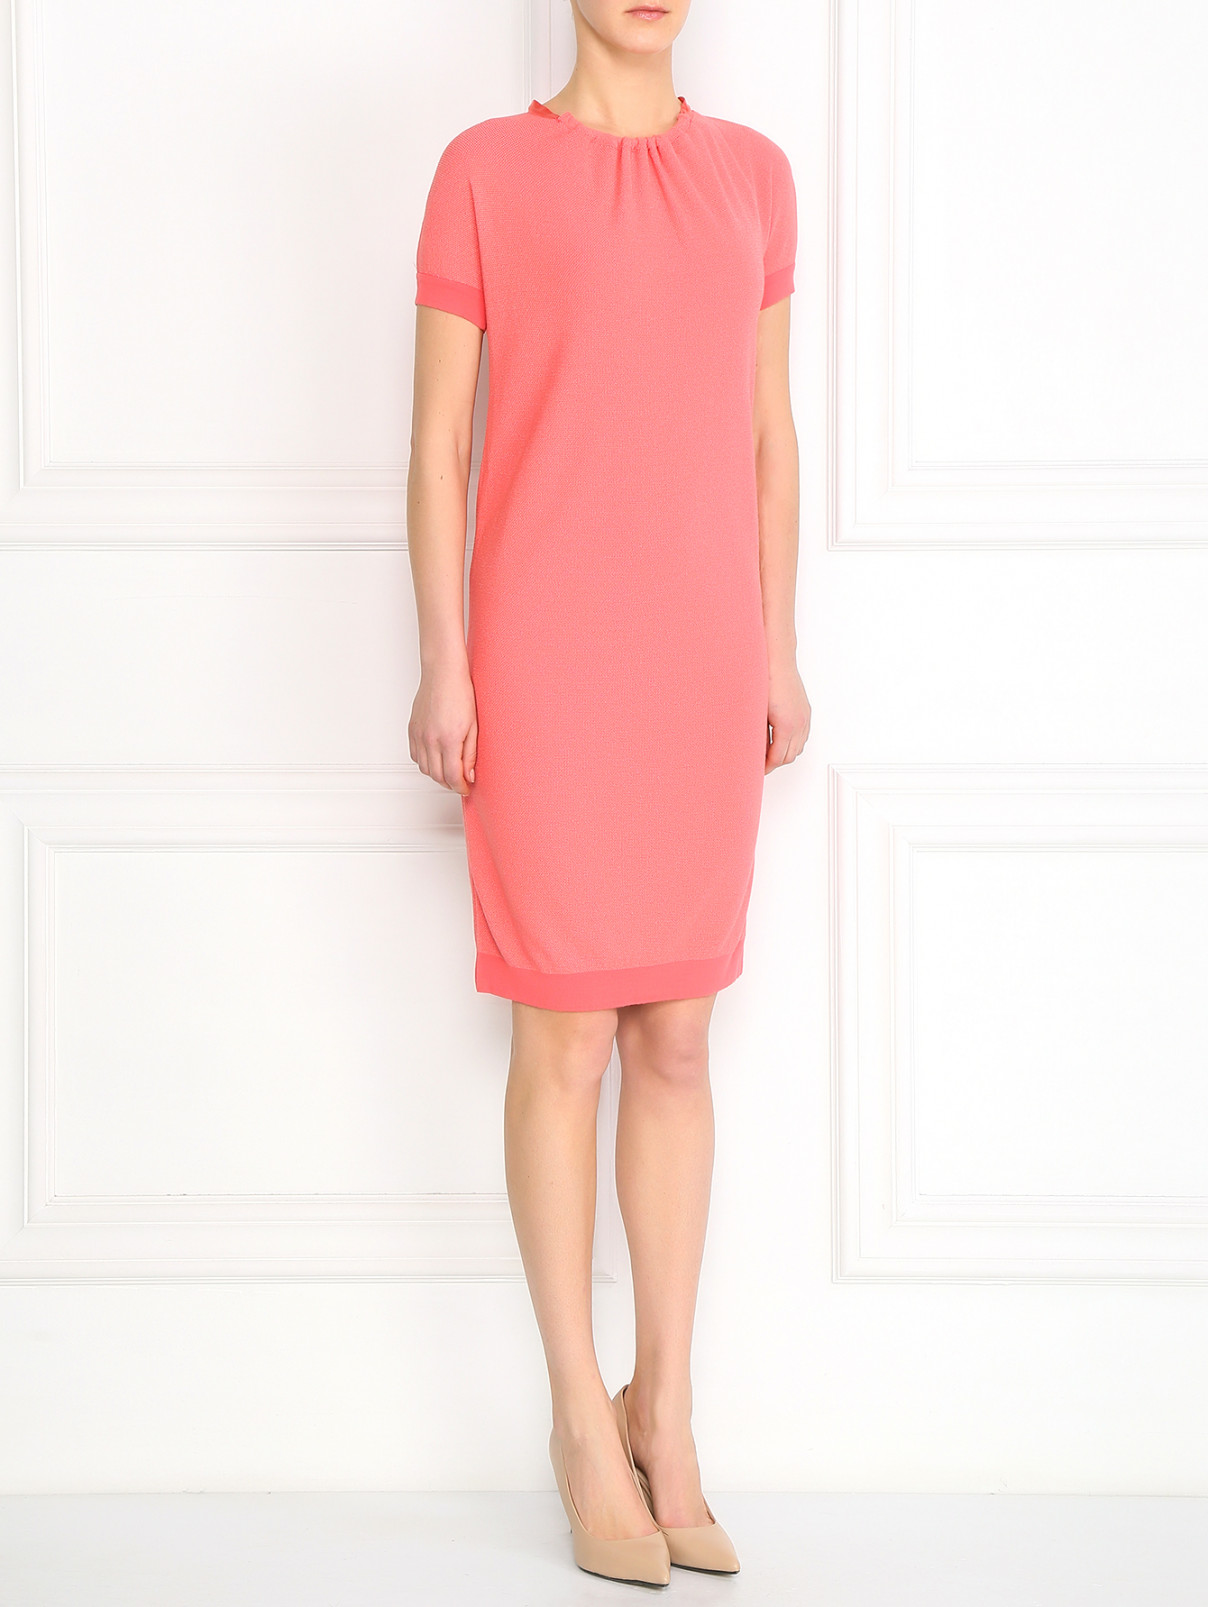 Платье с вырезом на спине Emporio Armani  –  Модель Общий вид  – Цвет:  Розовый